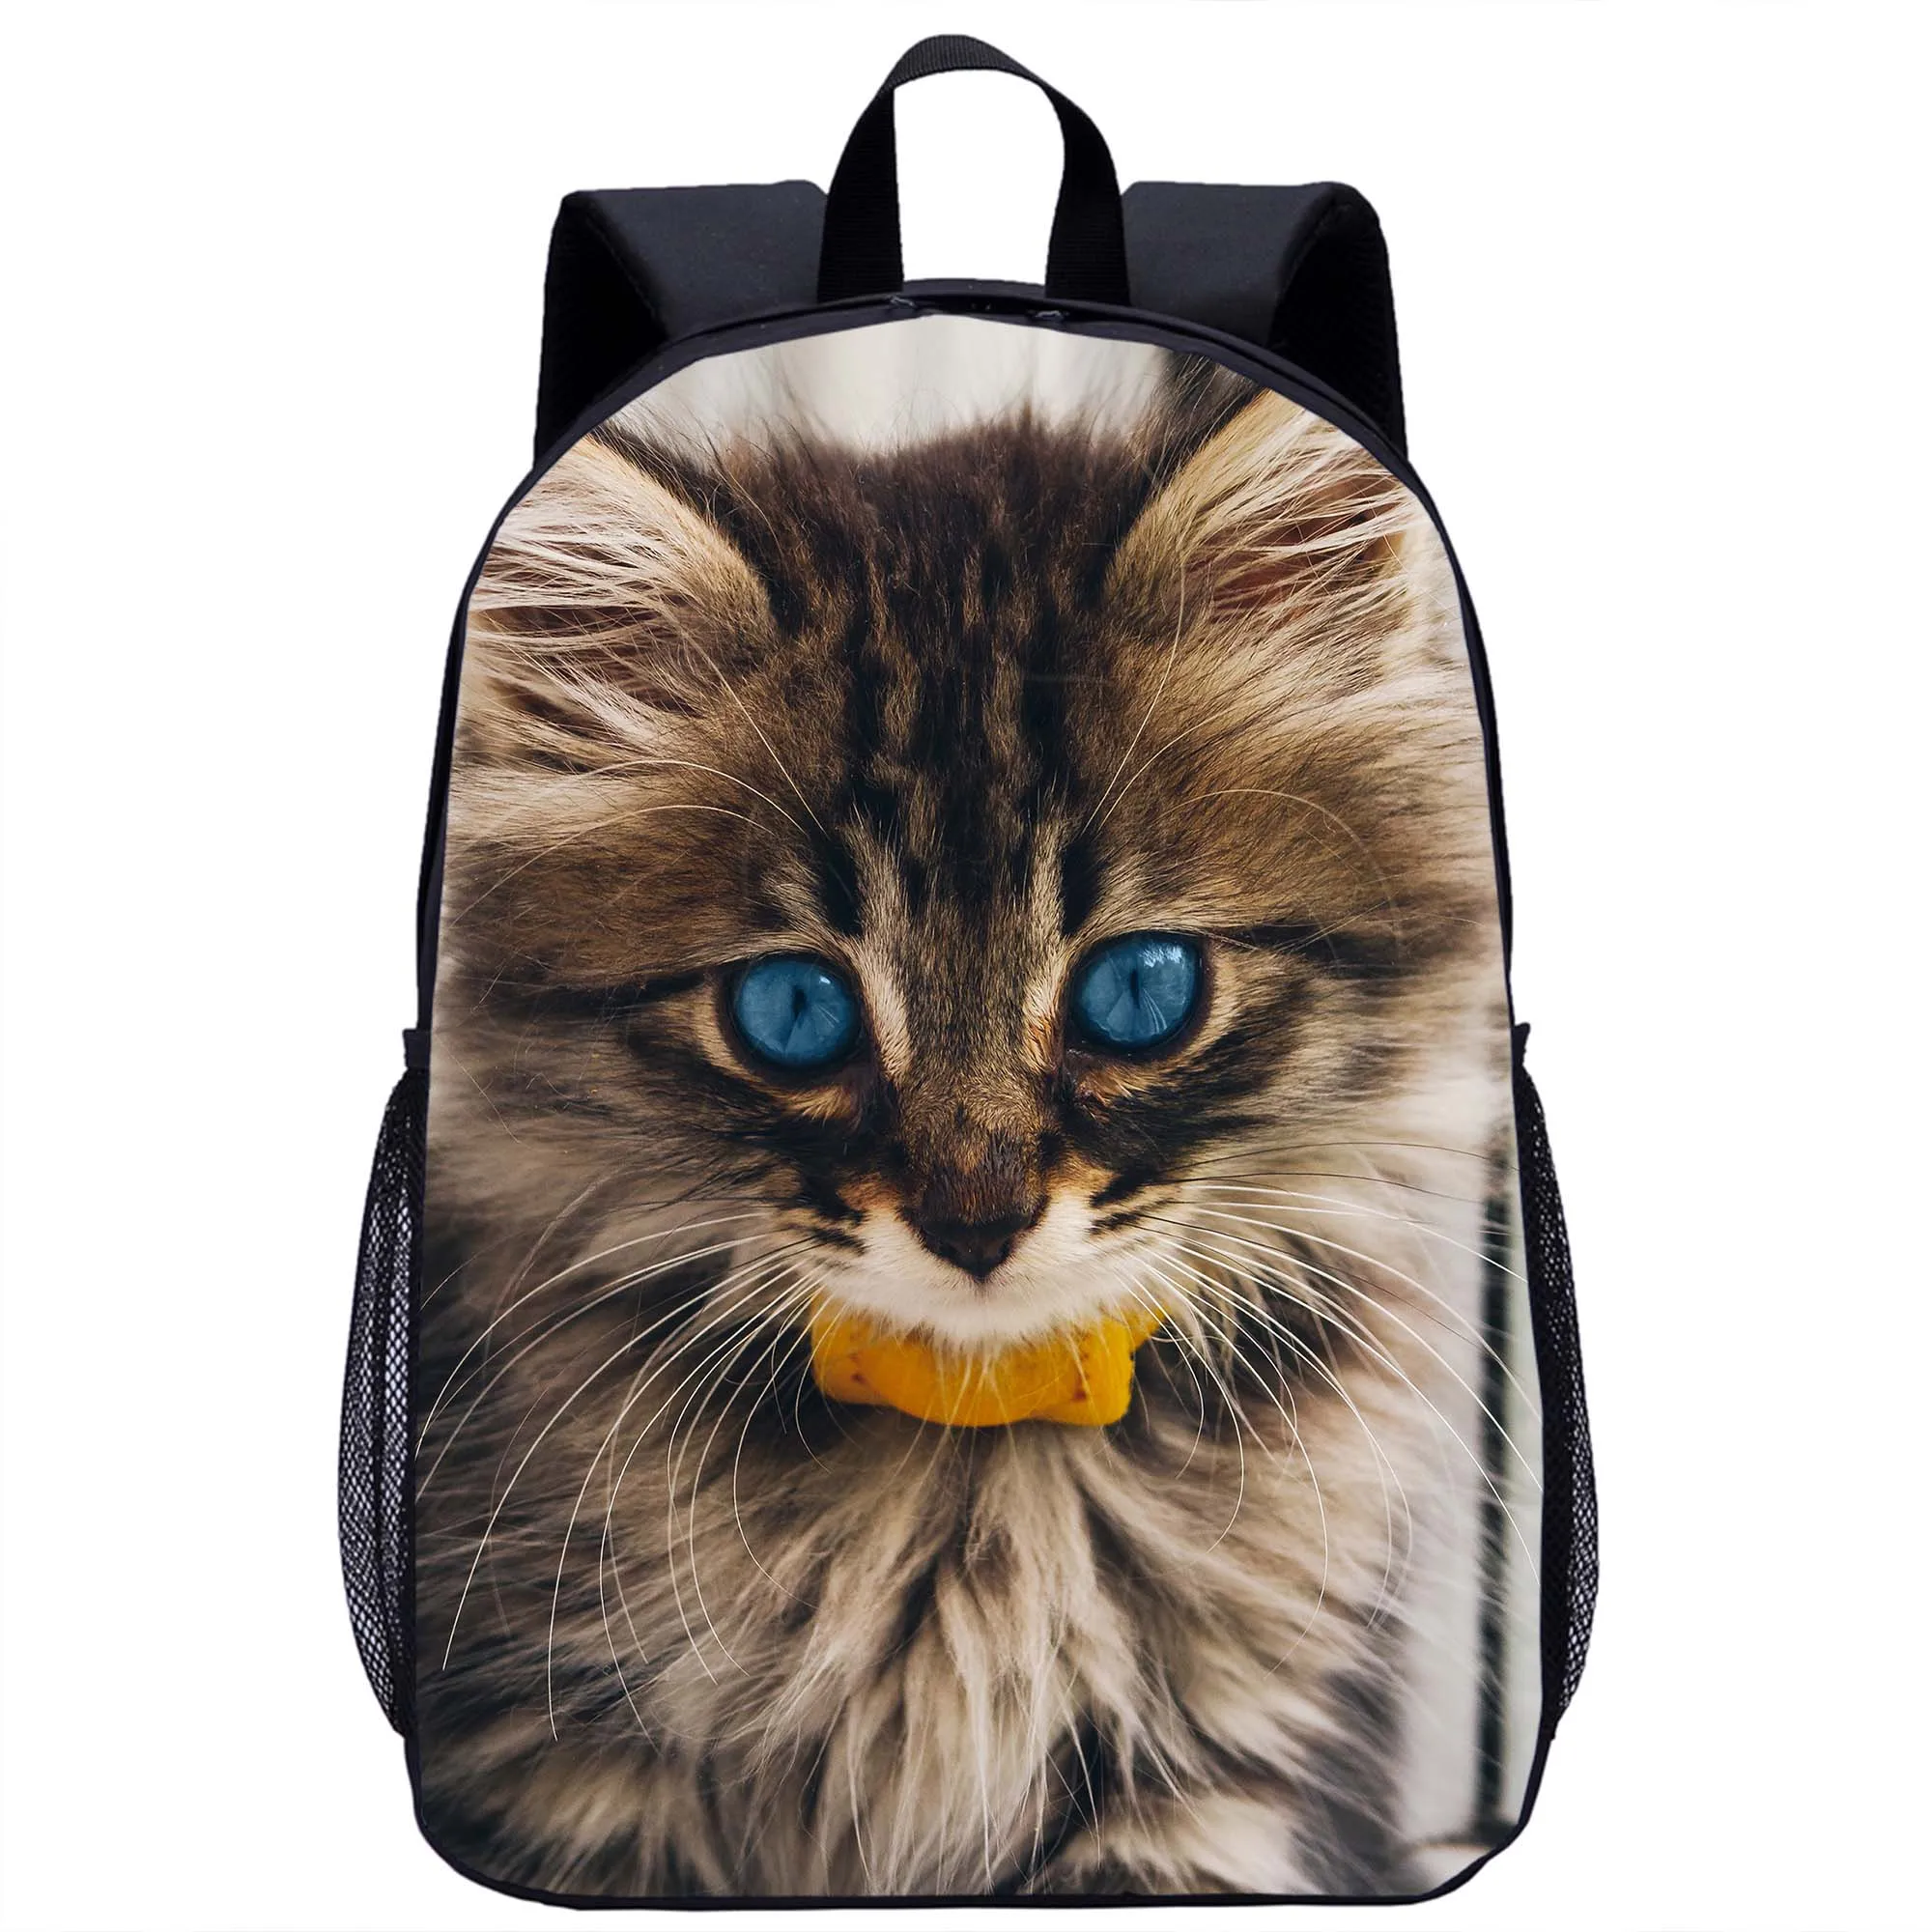 Рюкзак с принтом милого кота для мальчиков и девочек, школьная сумка для подростков, школьная сумка для студентов, повседневный рюкзак для женщин, Мужской рюкзак для путешествий